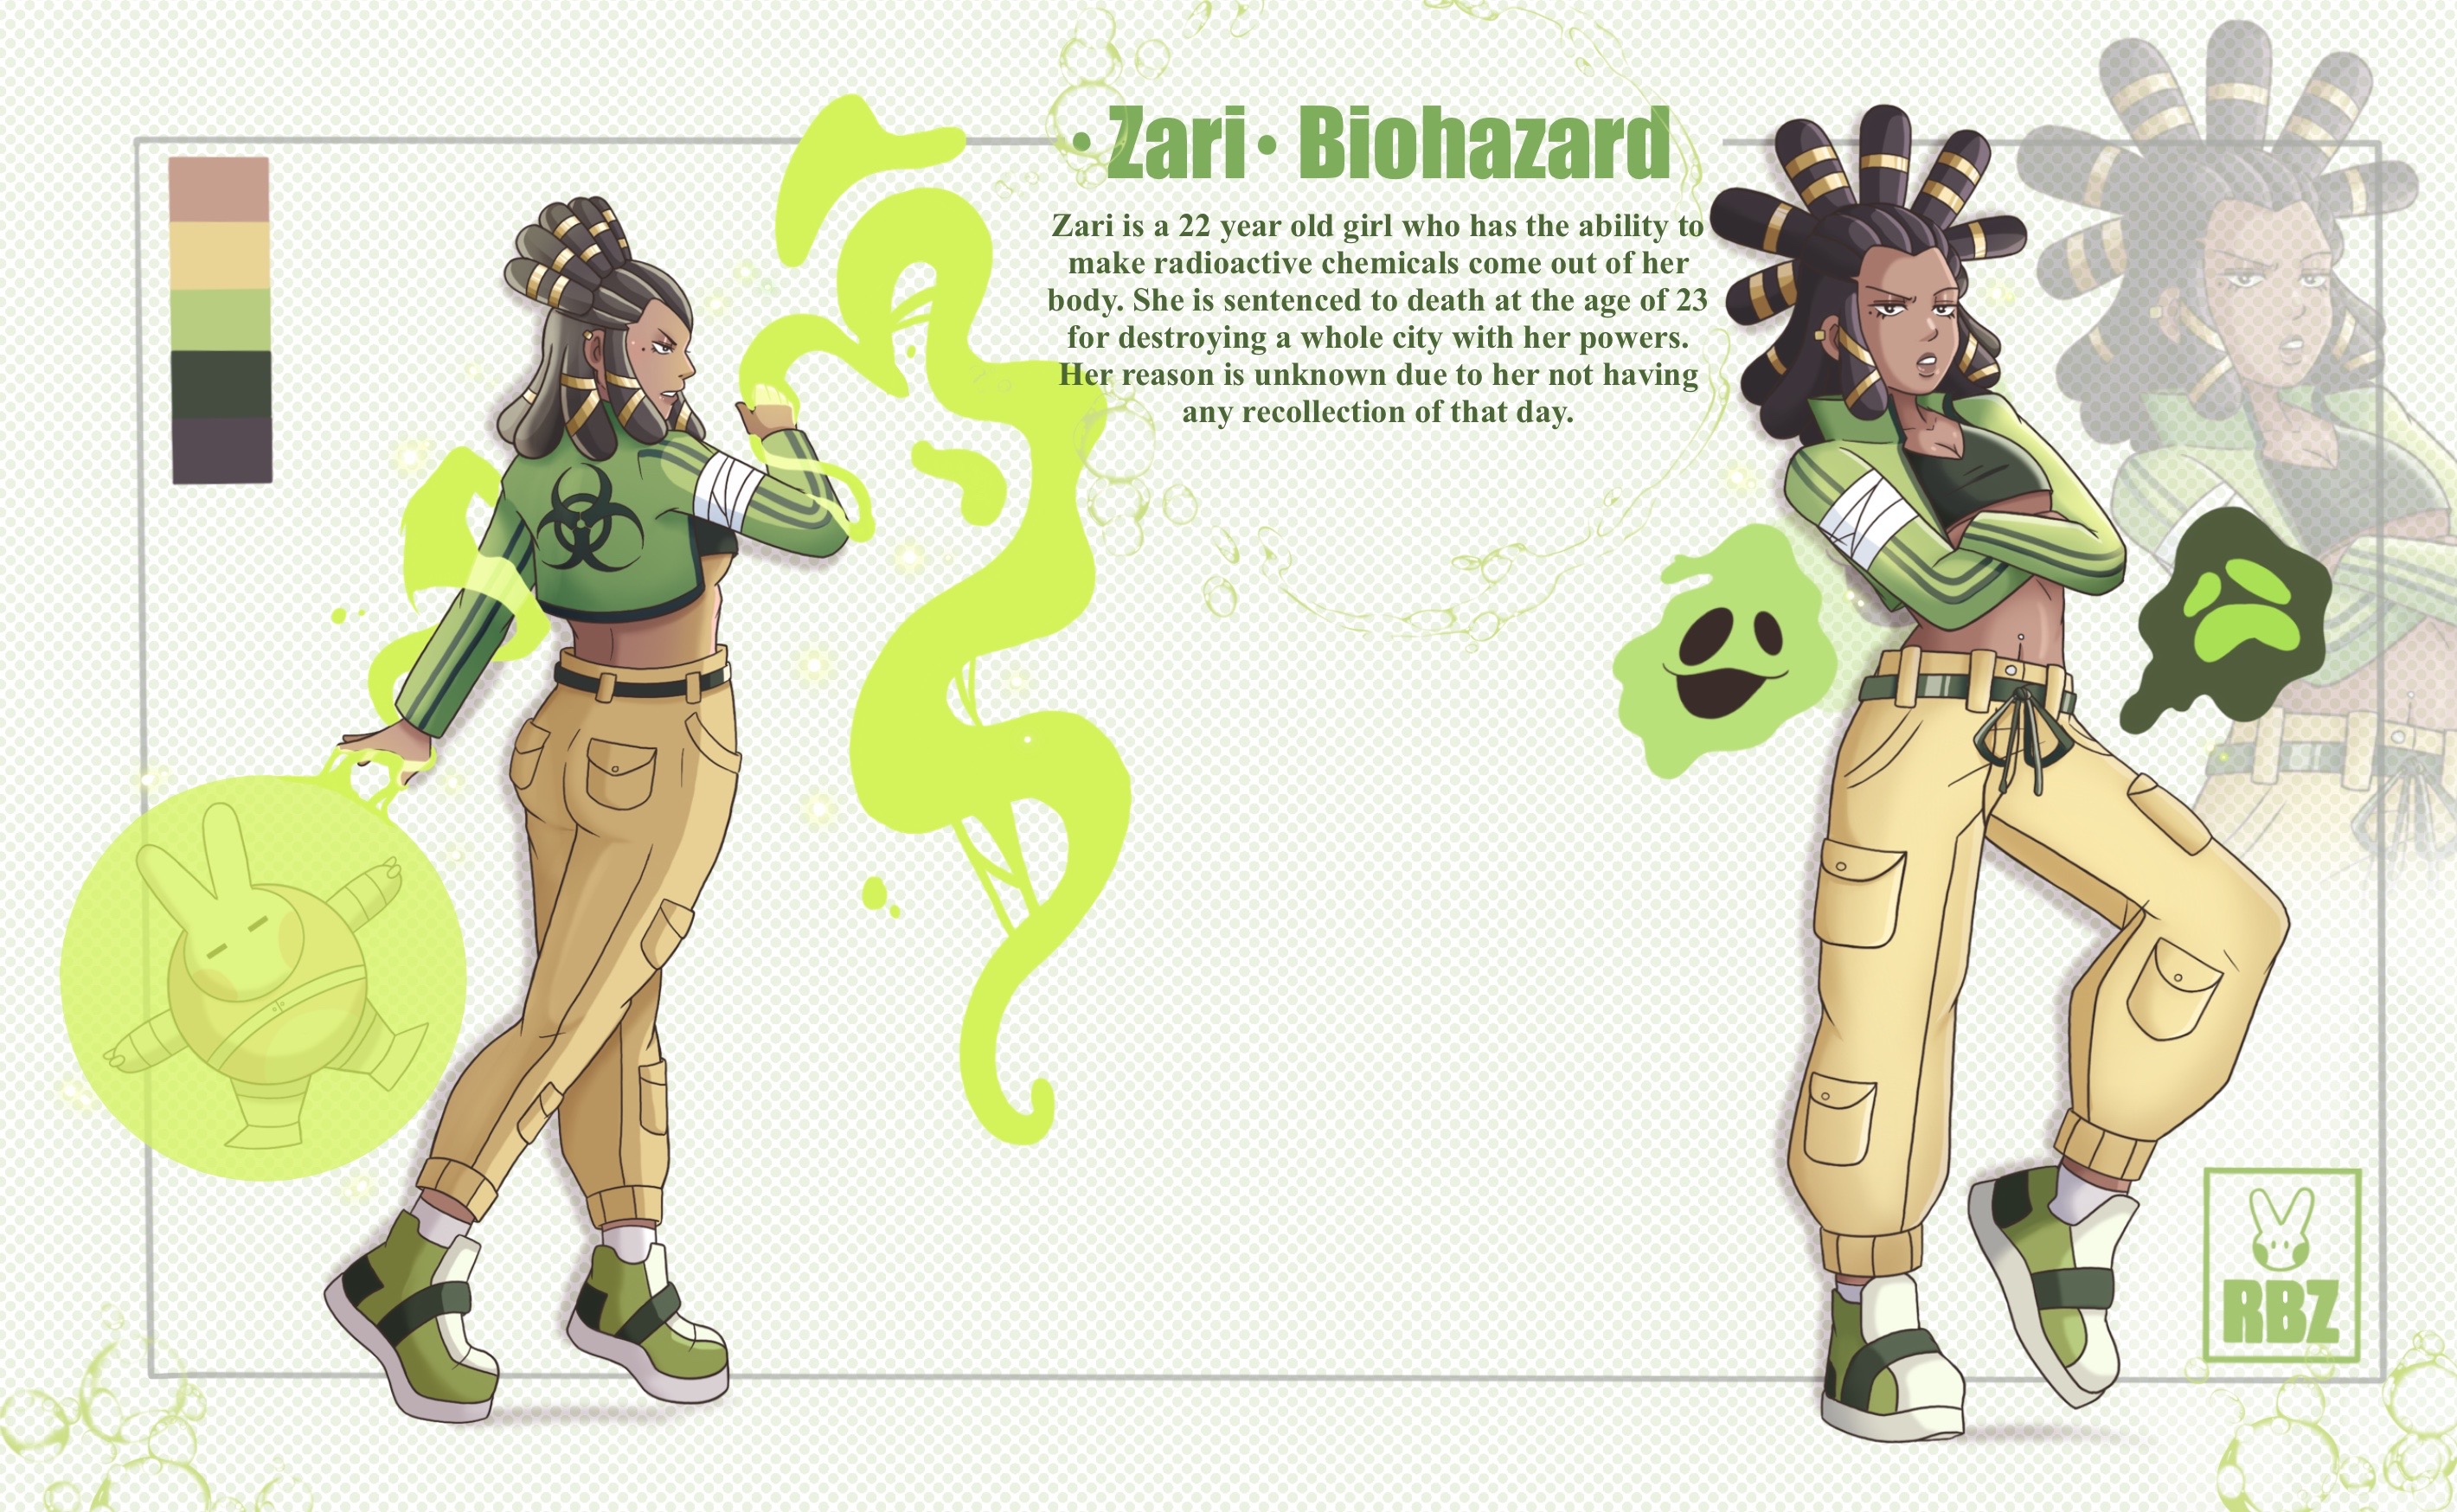 R.B.Z Hero's Zari Character Sheet 